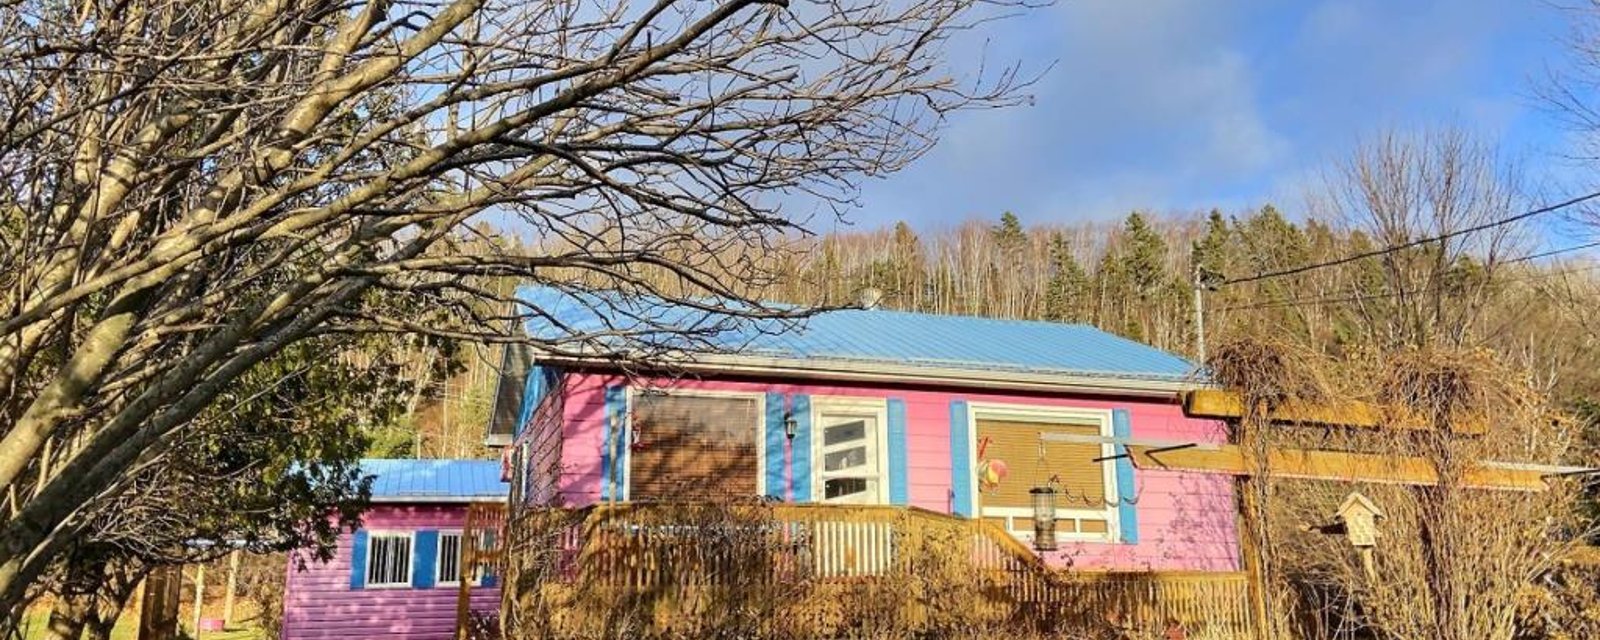 Coquet bungalow à vendre pour 187 000$ avec une foule d'inclusions